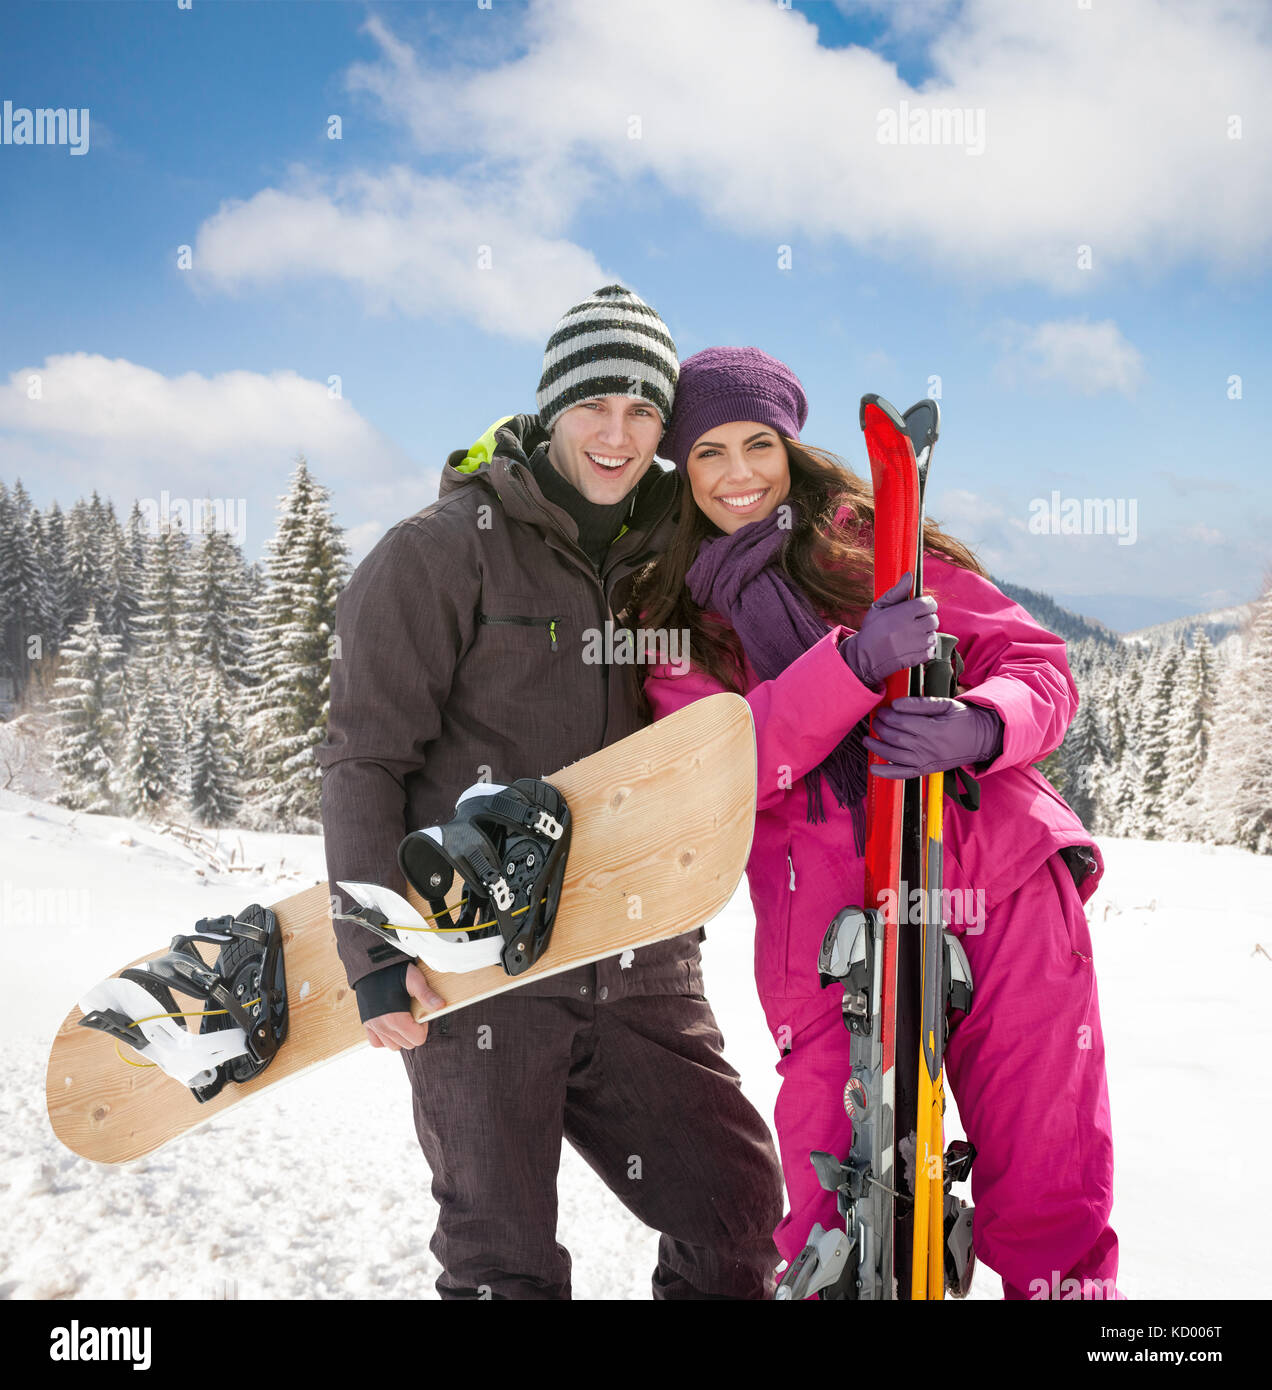 La mujer y el hombre joven esquiador en día de invierno Foto de stock